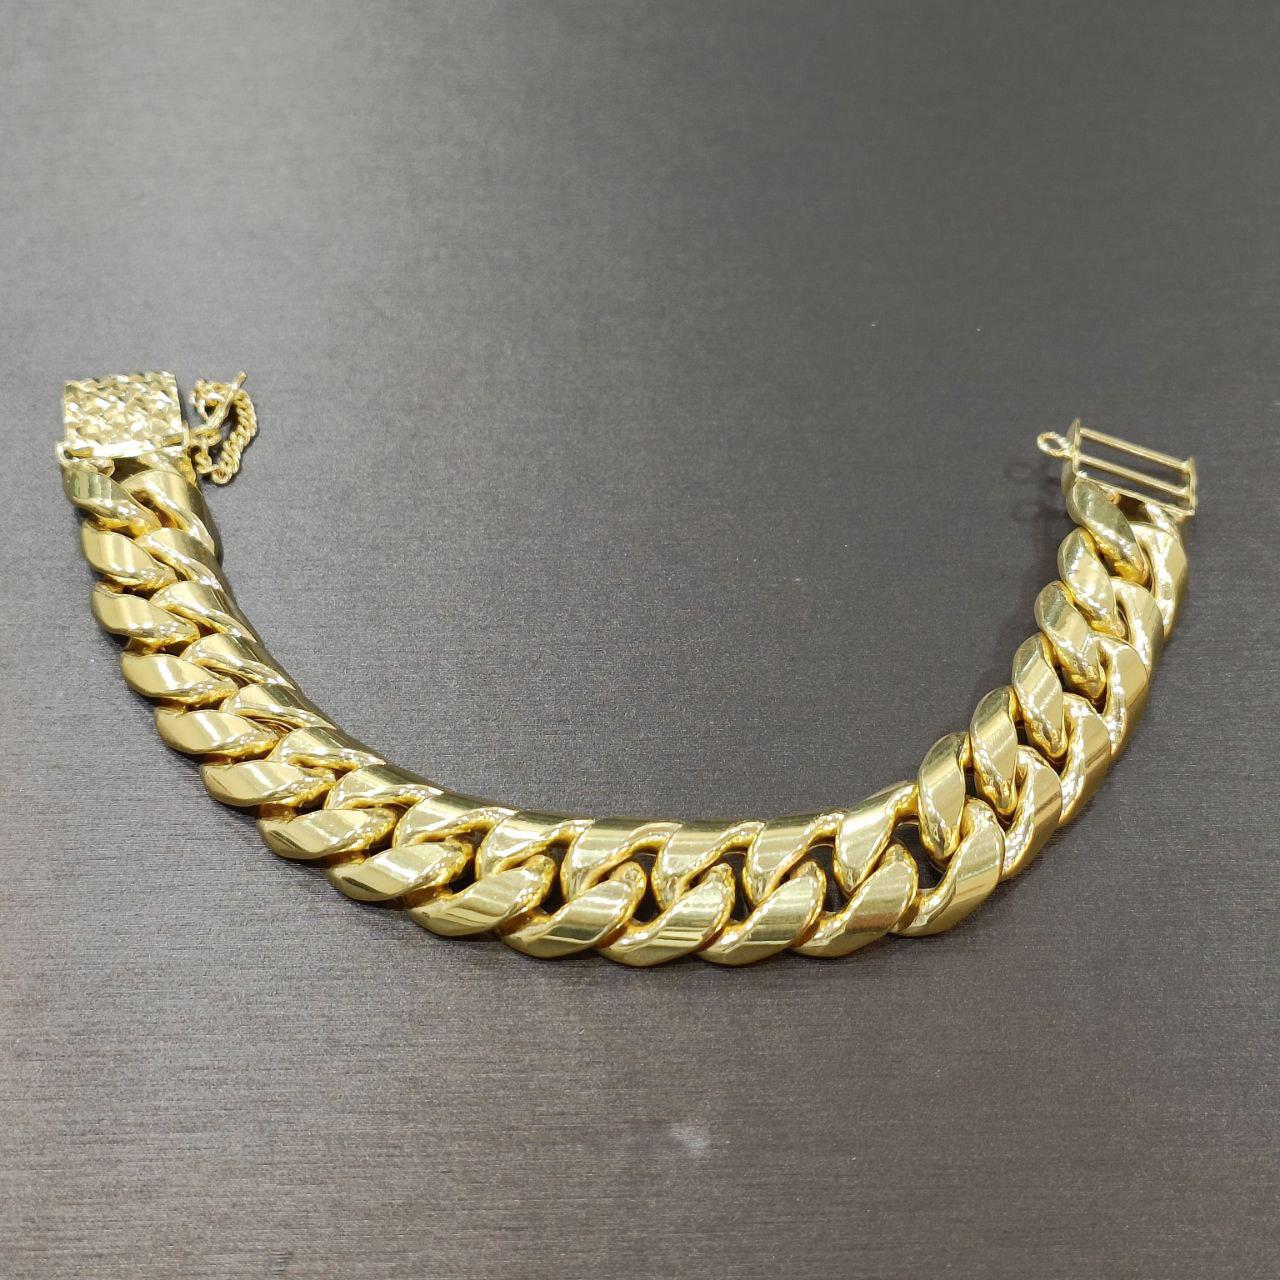 22k / 916 Gold Shiny Unisex Bracelet-916 gold-Best Gold Shop